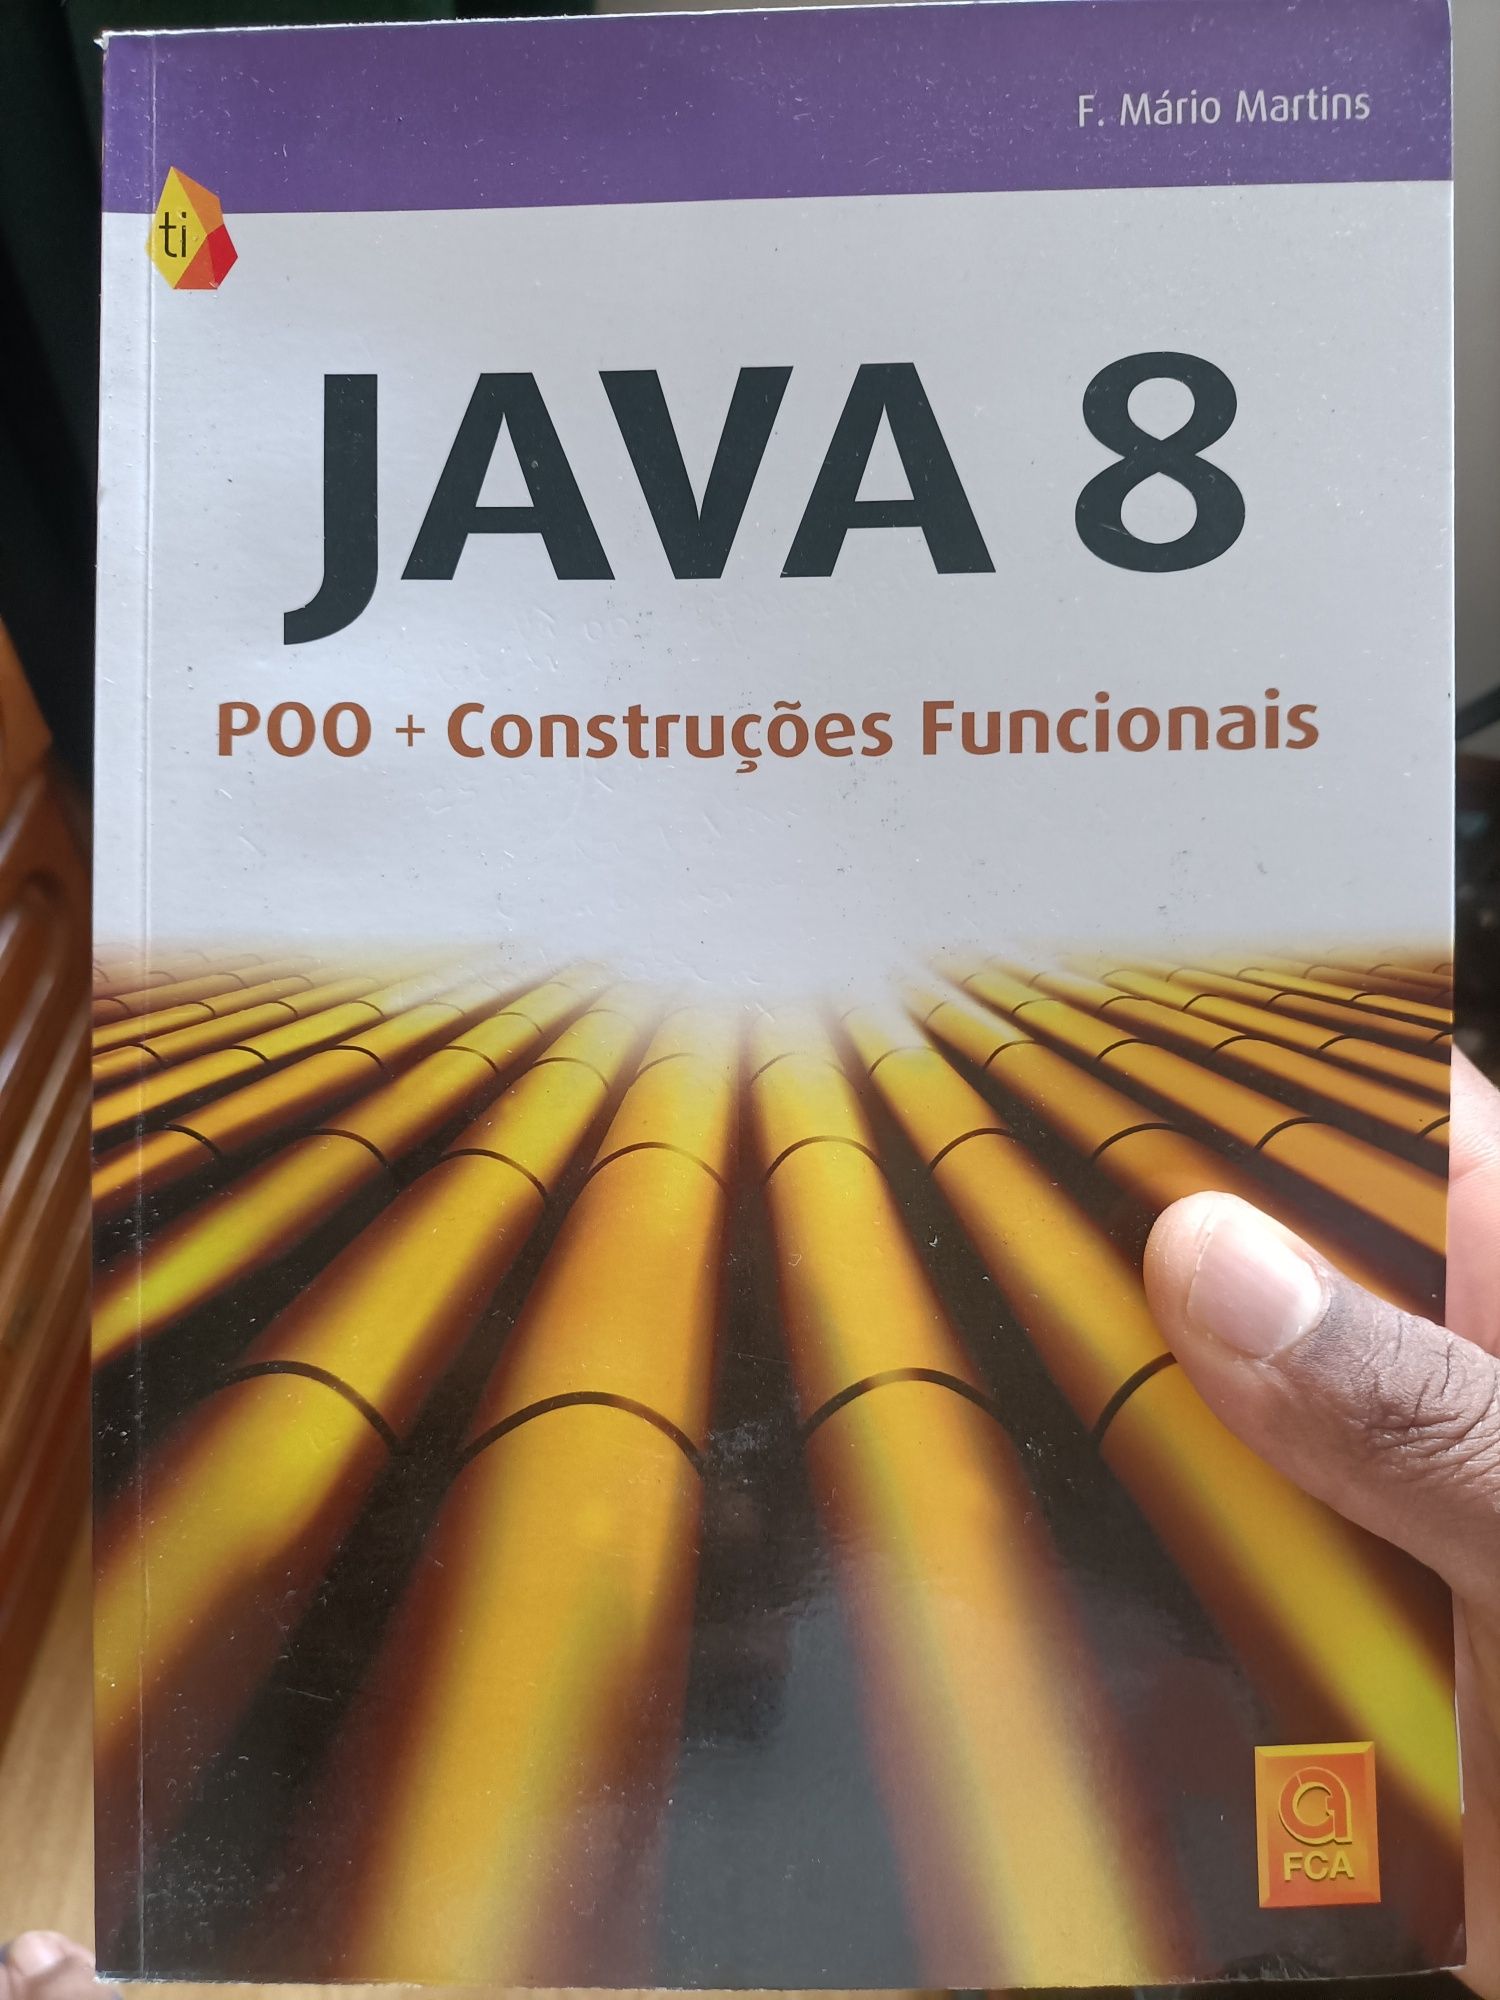 Java 8 - Poo + Construções funcionais